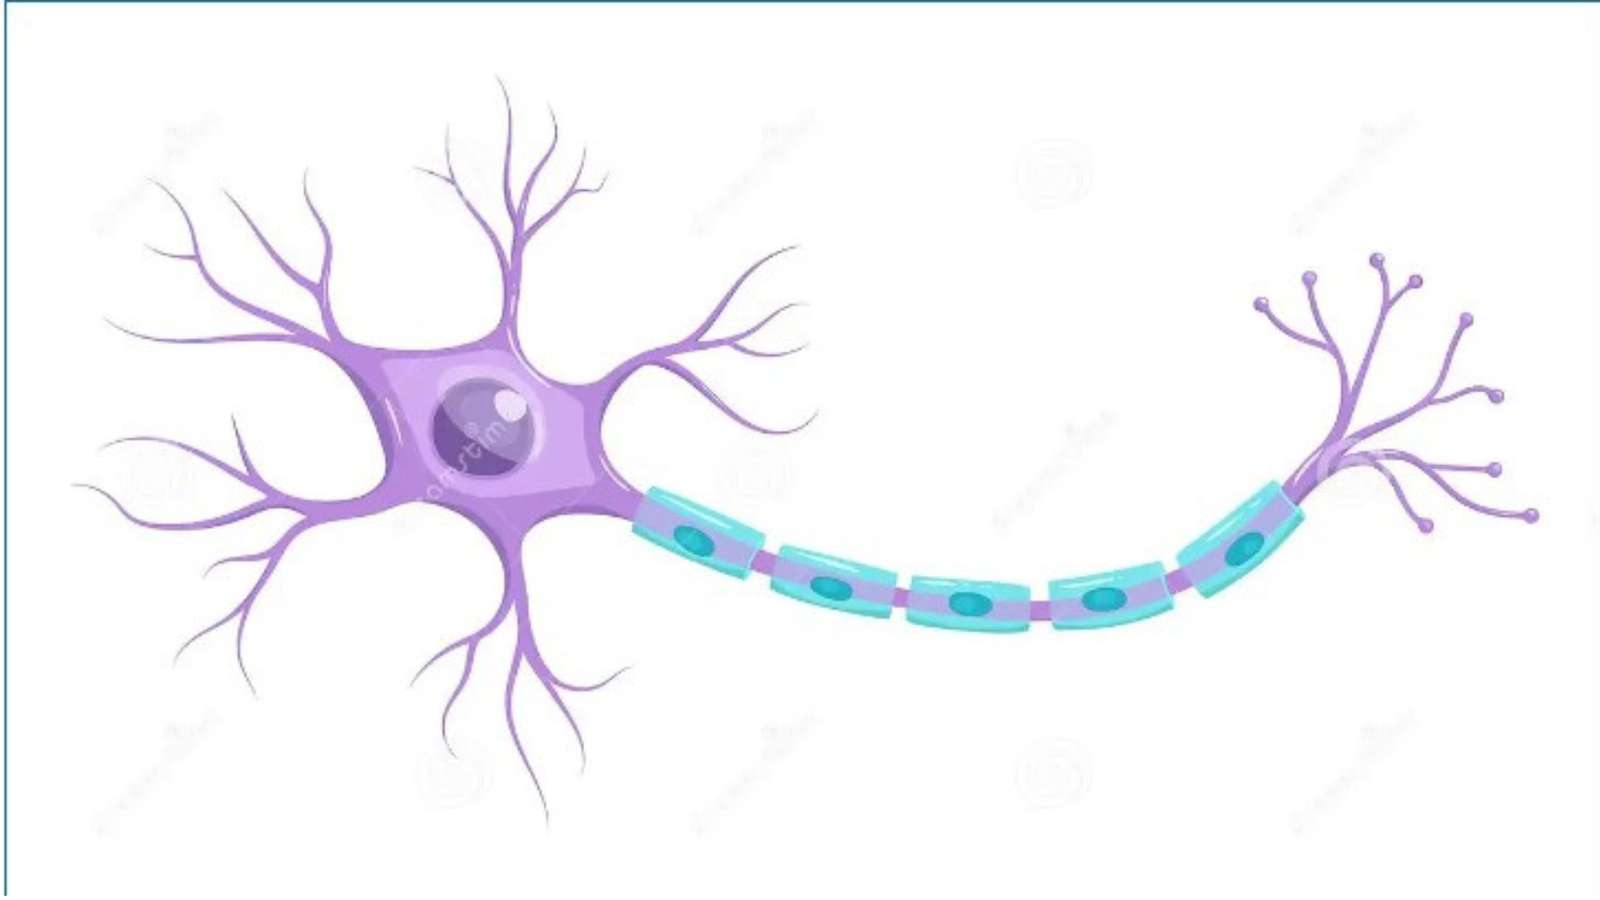 Neuron puzzle online